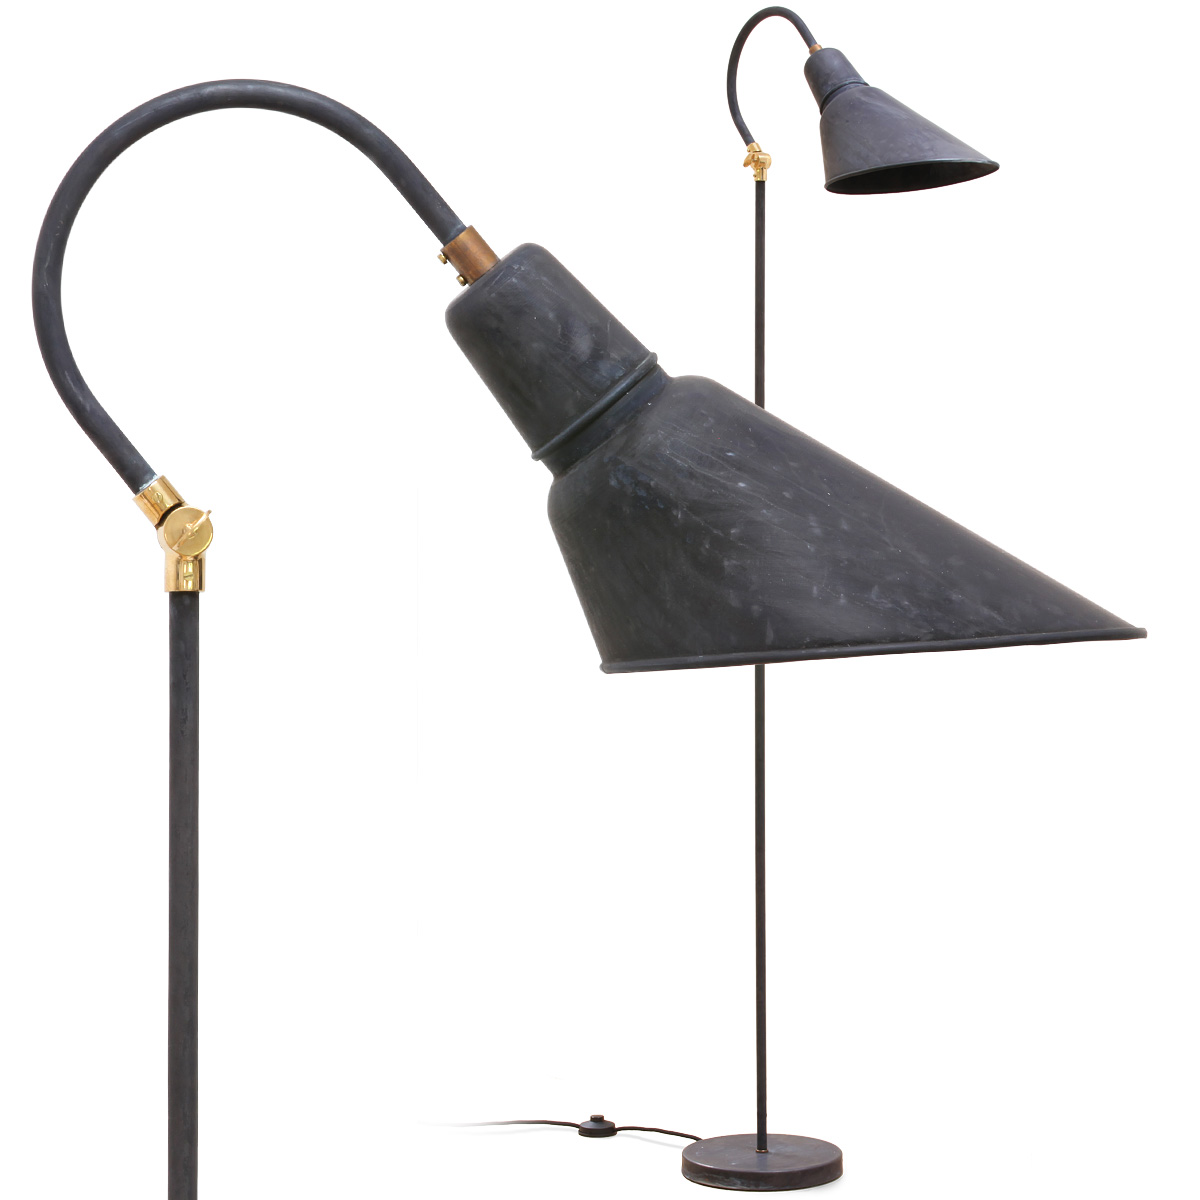 HAMBURG Stehlampe mit asymmetrischem Kegelschirm: Die Leselampe/Stehlampe HAMBURG, hier mit 180 cm Gesamthöhe in Kupfer Patina (Schirmtyp 306)